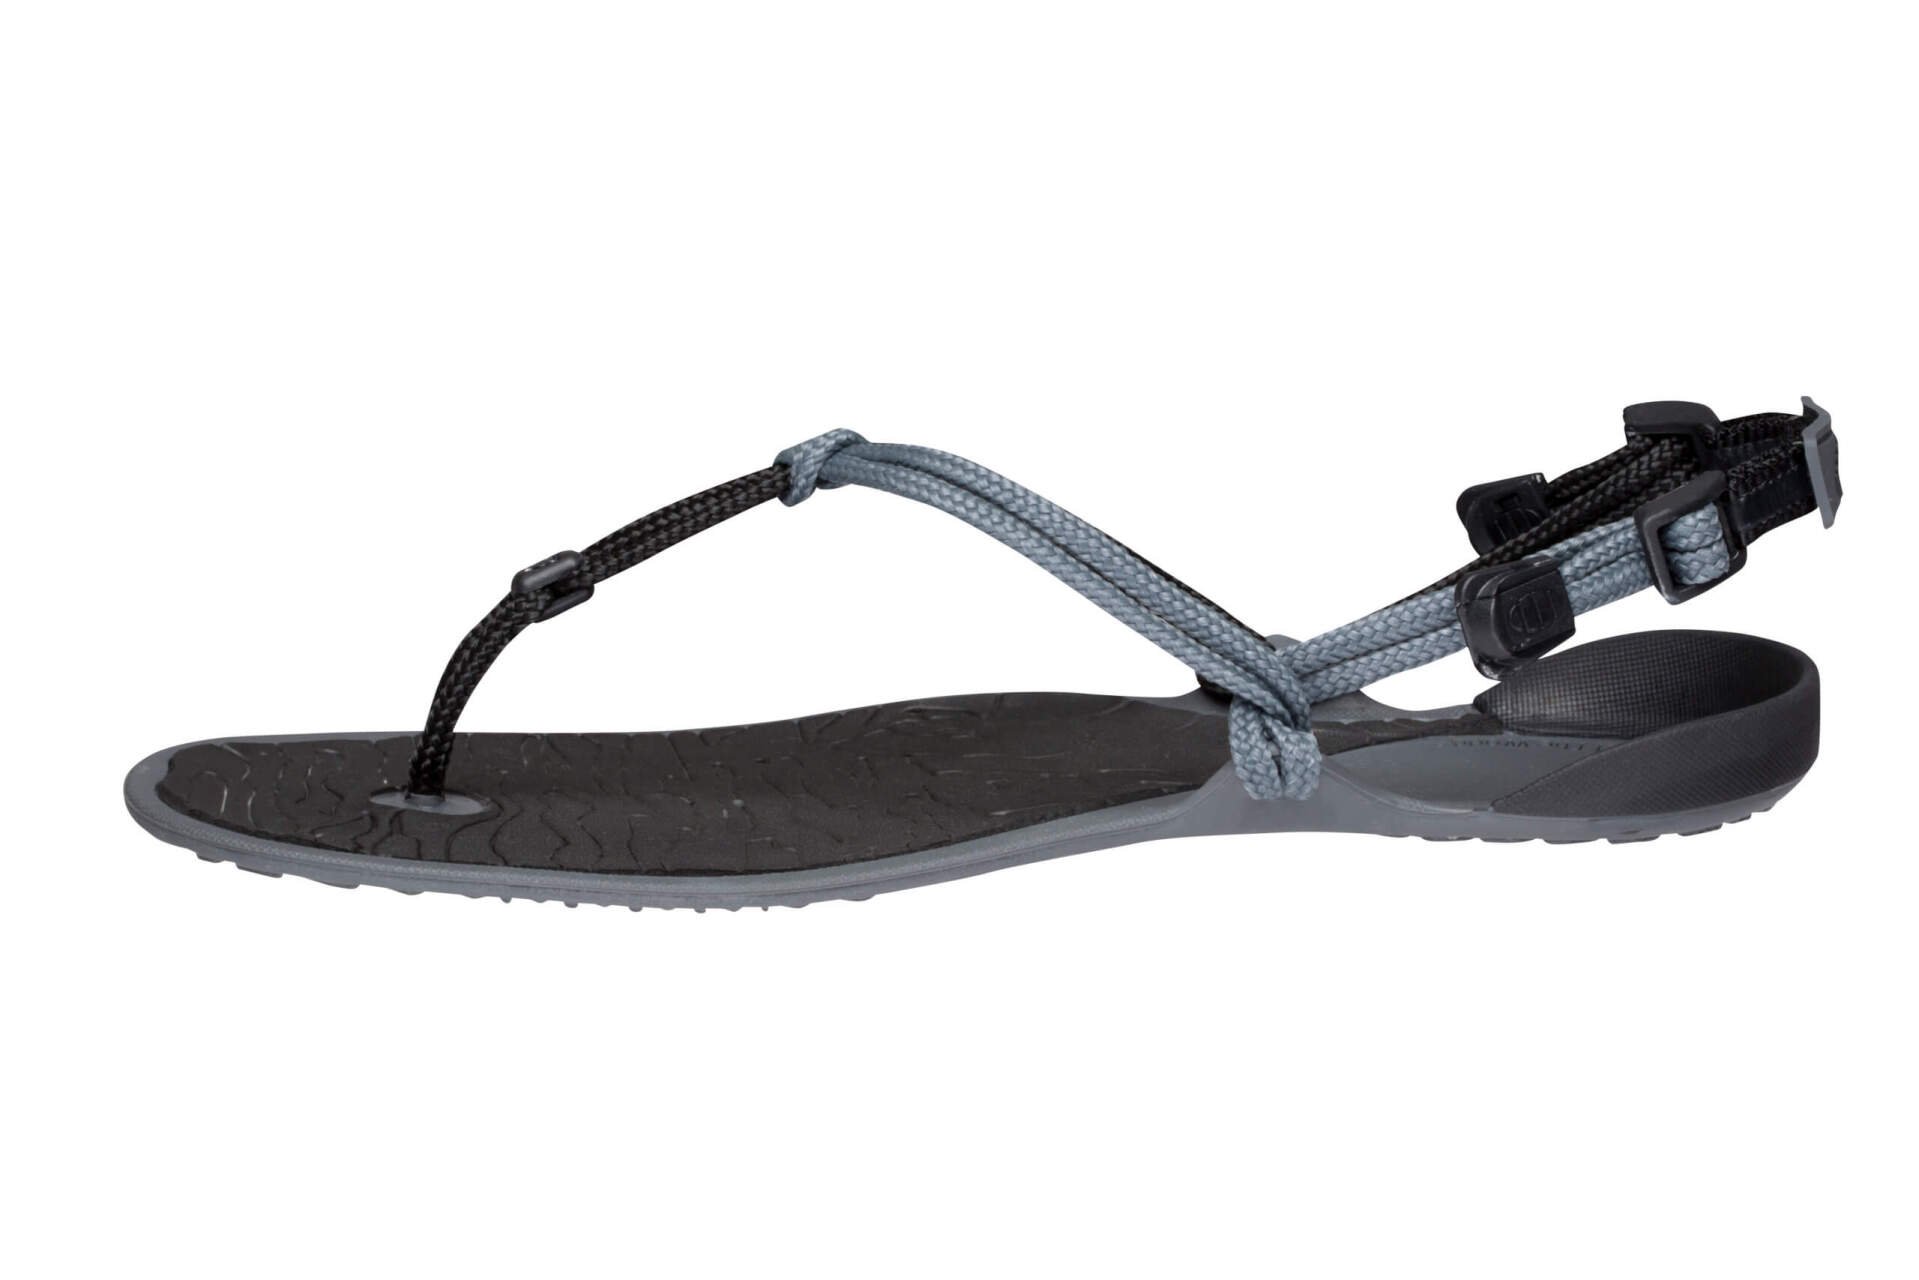 Xero shoes [m] Cloud - Charcoal/Coal Black | CLD-CHBK |